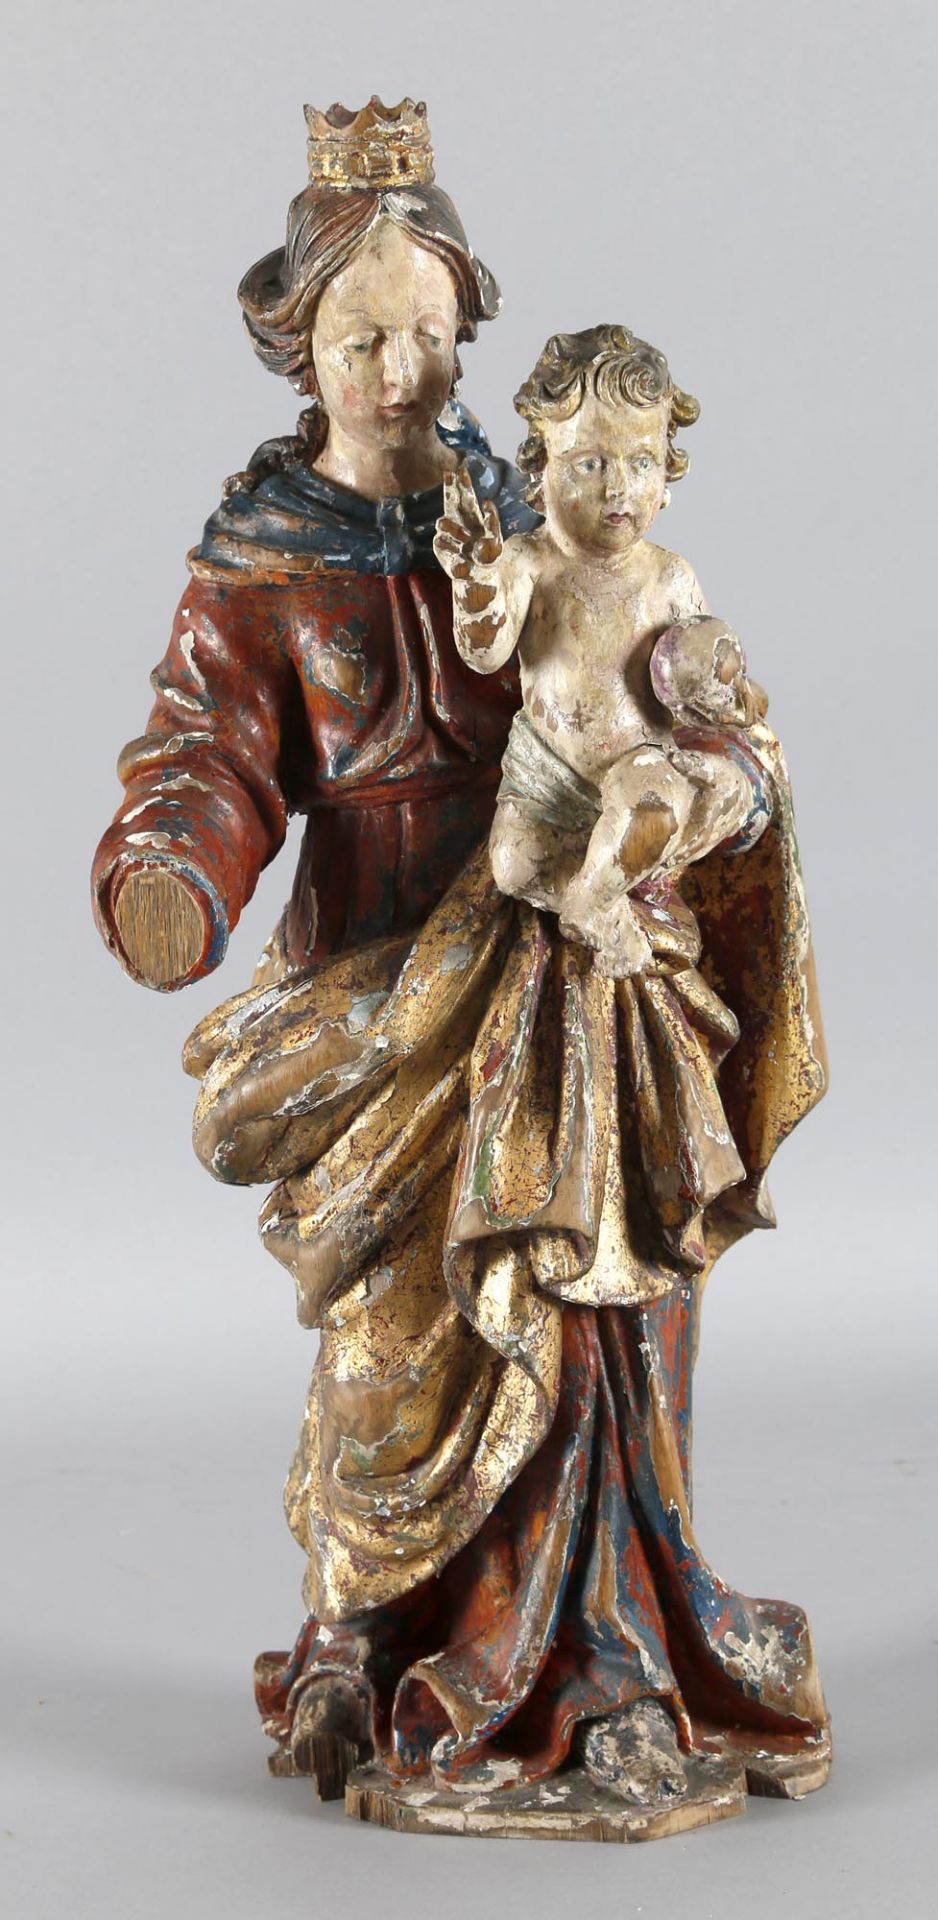 Muttergottes, Maasraum, Mitte 18. Jh.Skulptur, wohl Eichenholz, vollrund gearbeitet, nicht